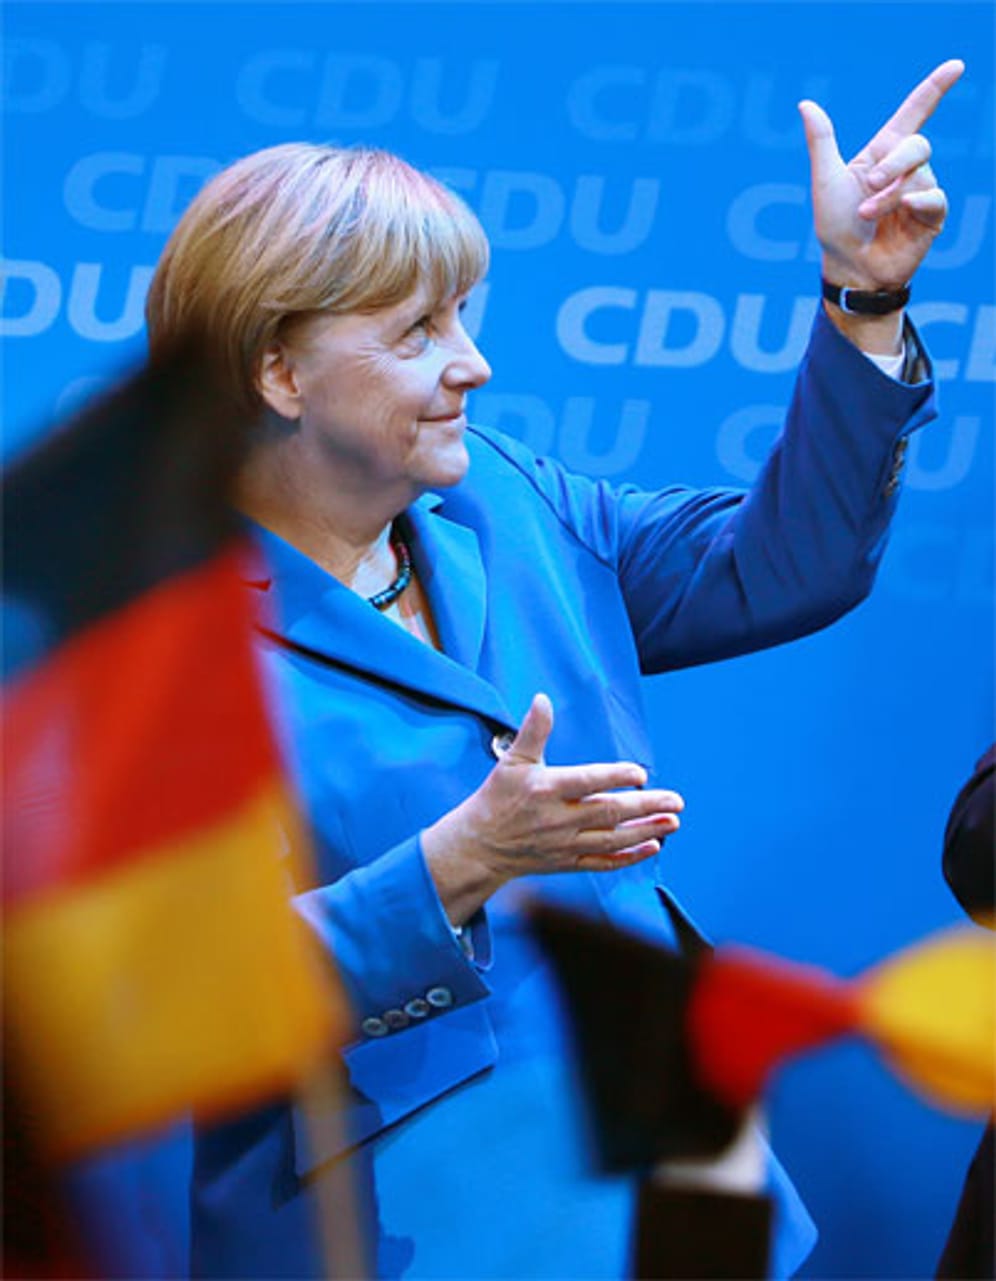 Bei der Bundestagswahl 2013 fährt Merkel mit der Union ein gutes Ergebnis ein - 41,5 Prozent. Die CDU-Vorsitzende bleibt Kanzlerin - fortan in einer Großen Koalition mit der SPD.